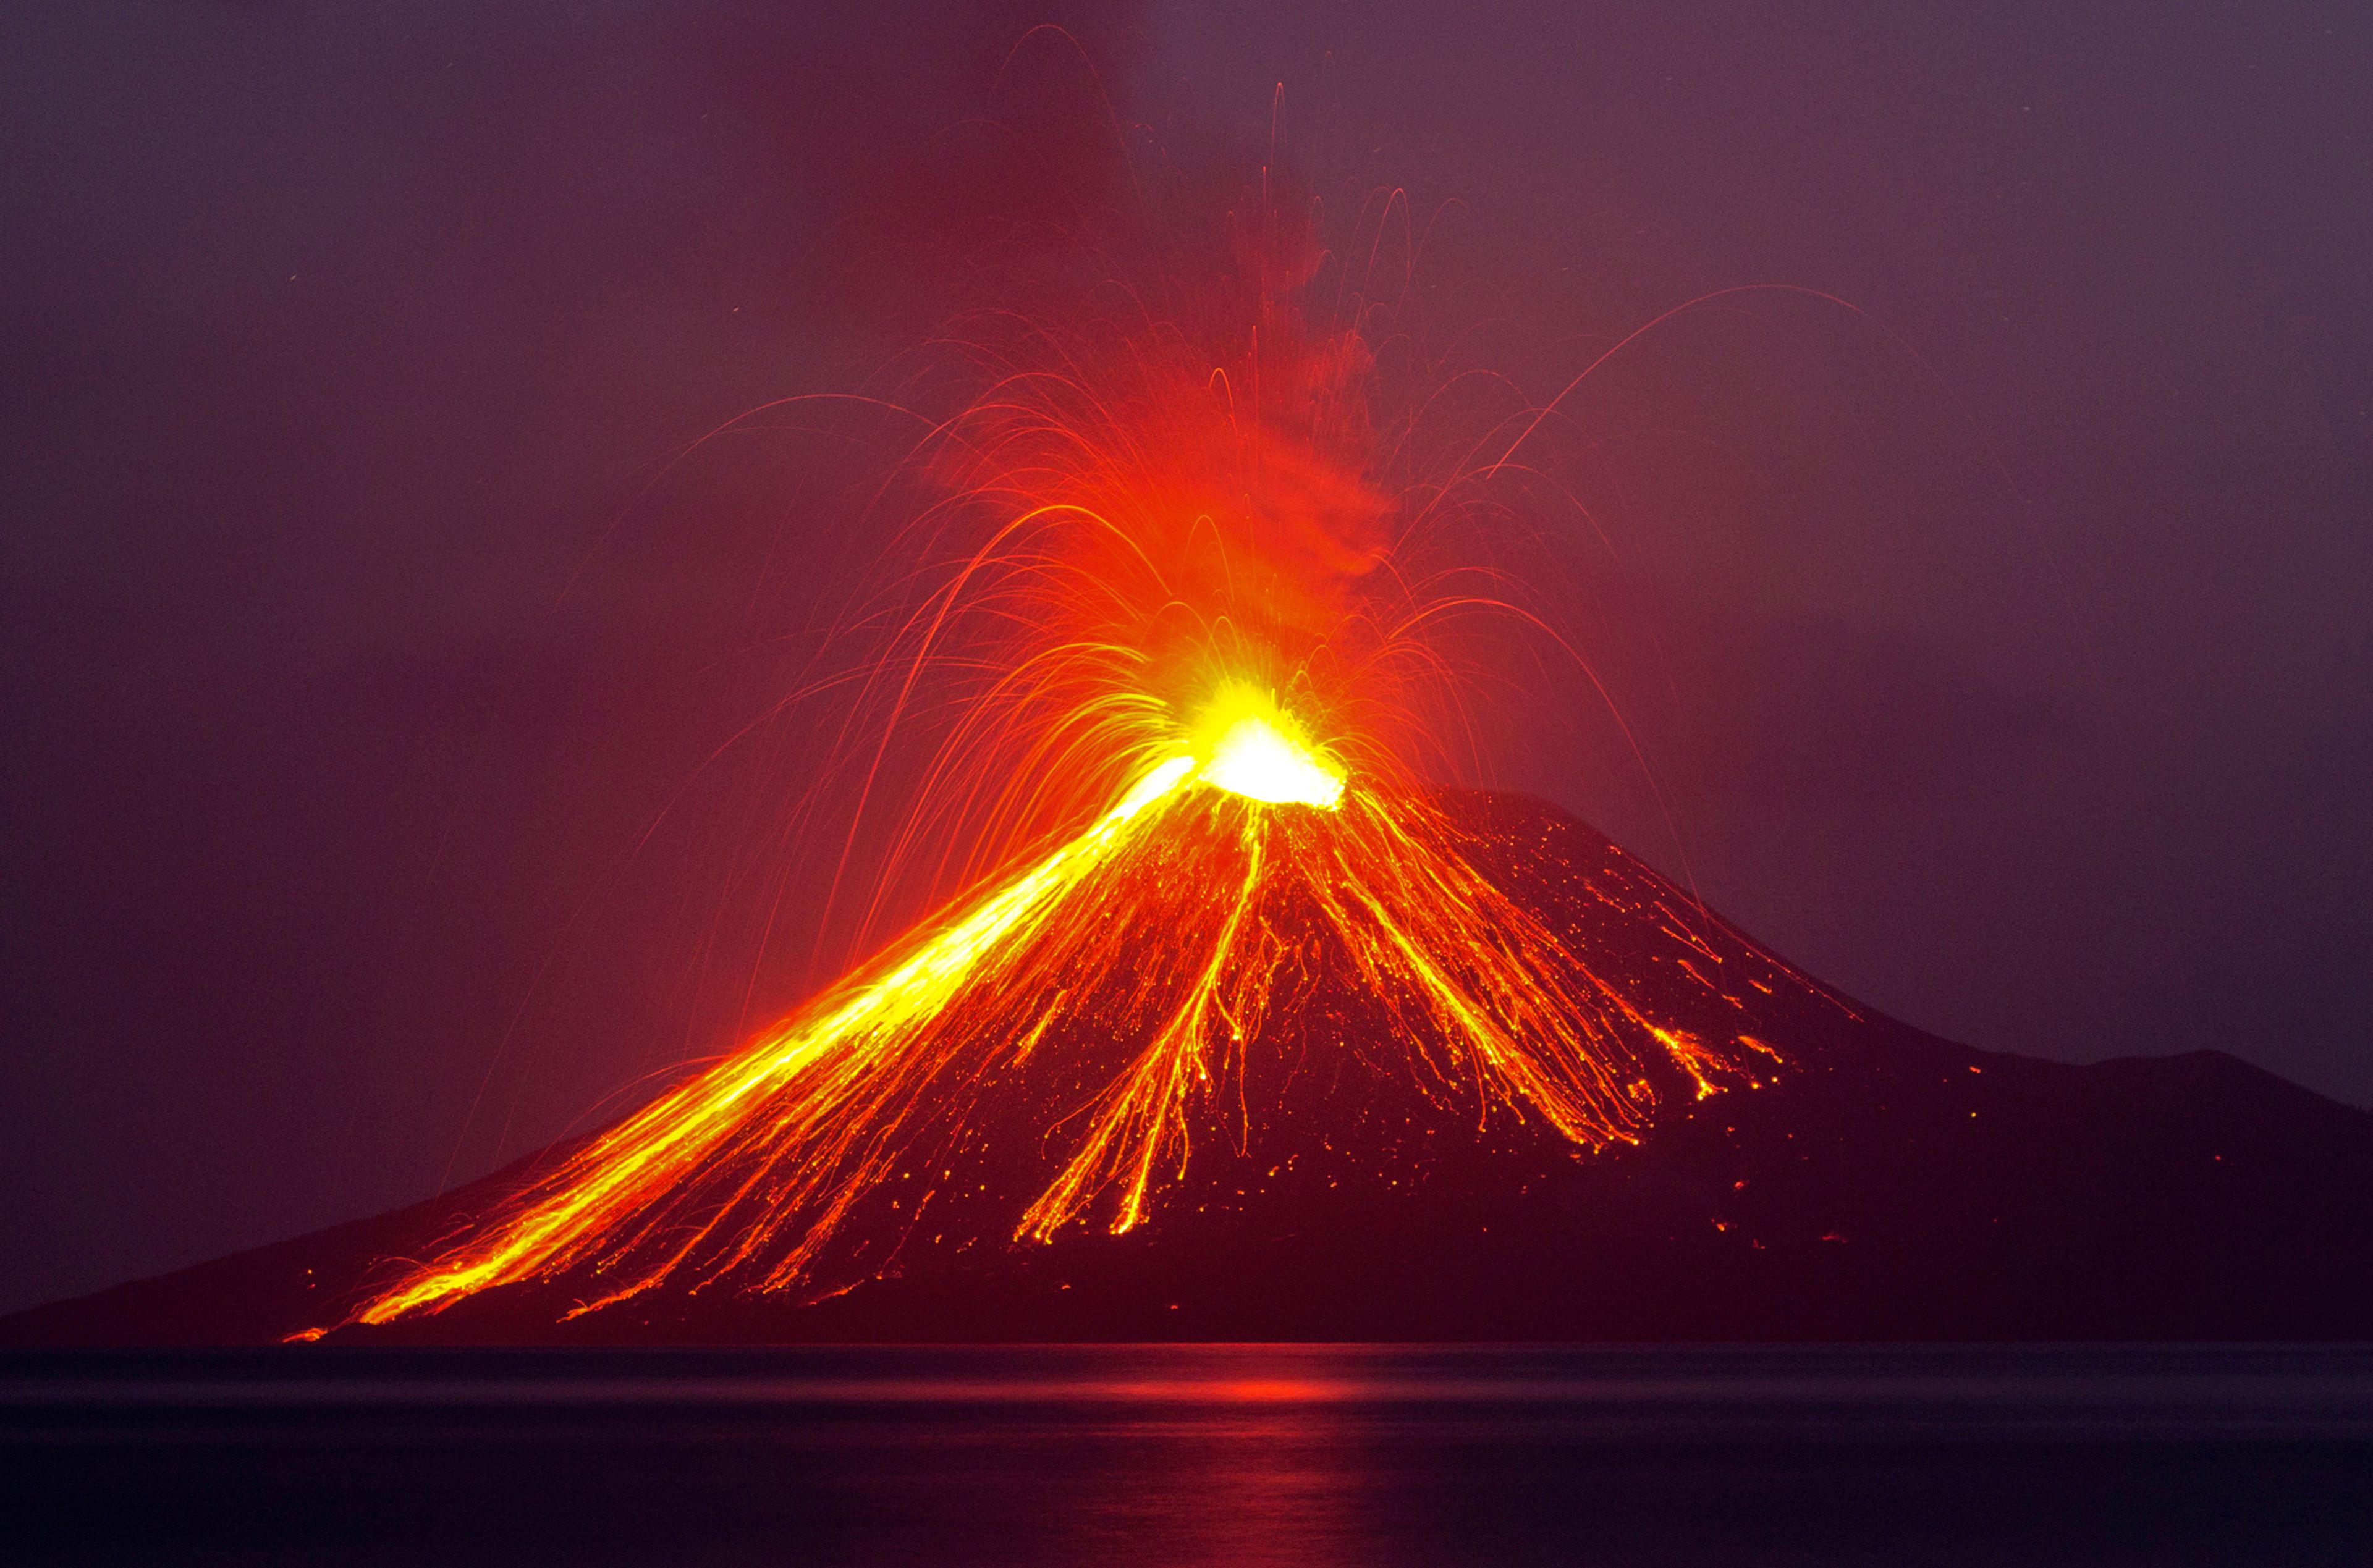 Anak Krakatau, hijo del Krakatoa, durante una erupción en 2018.